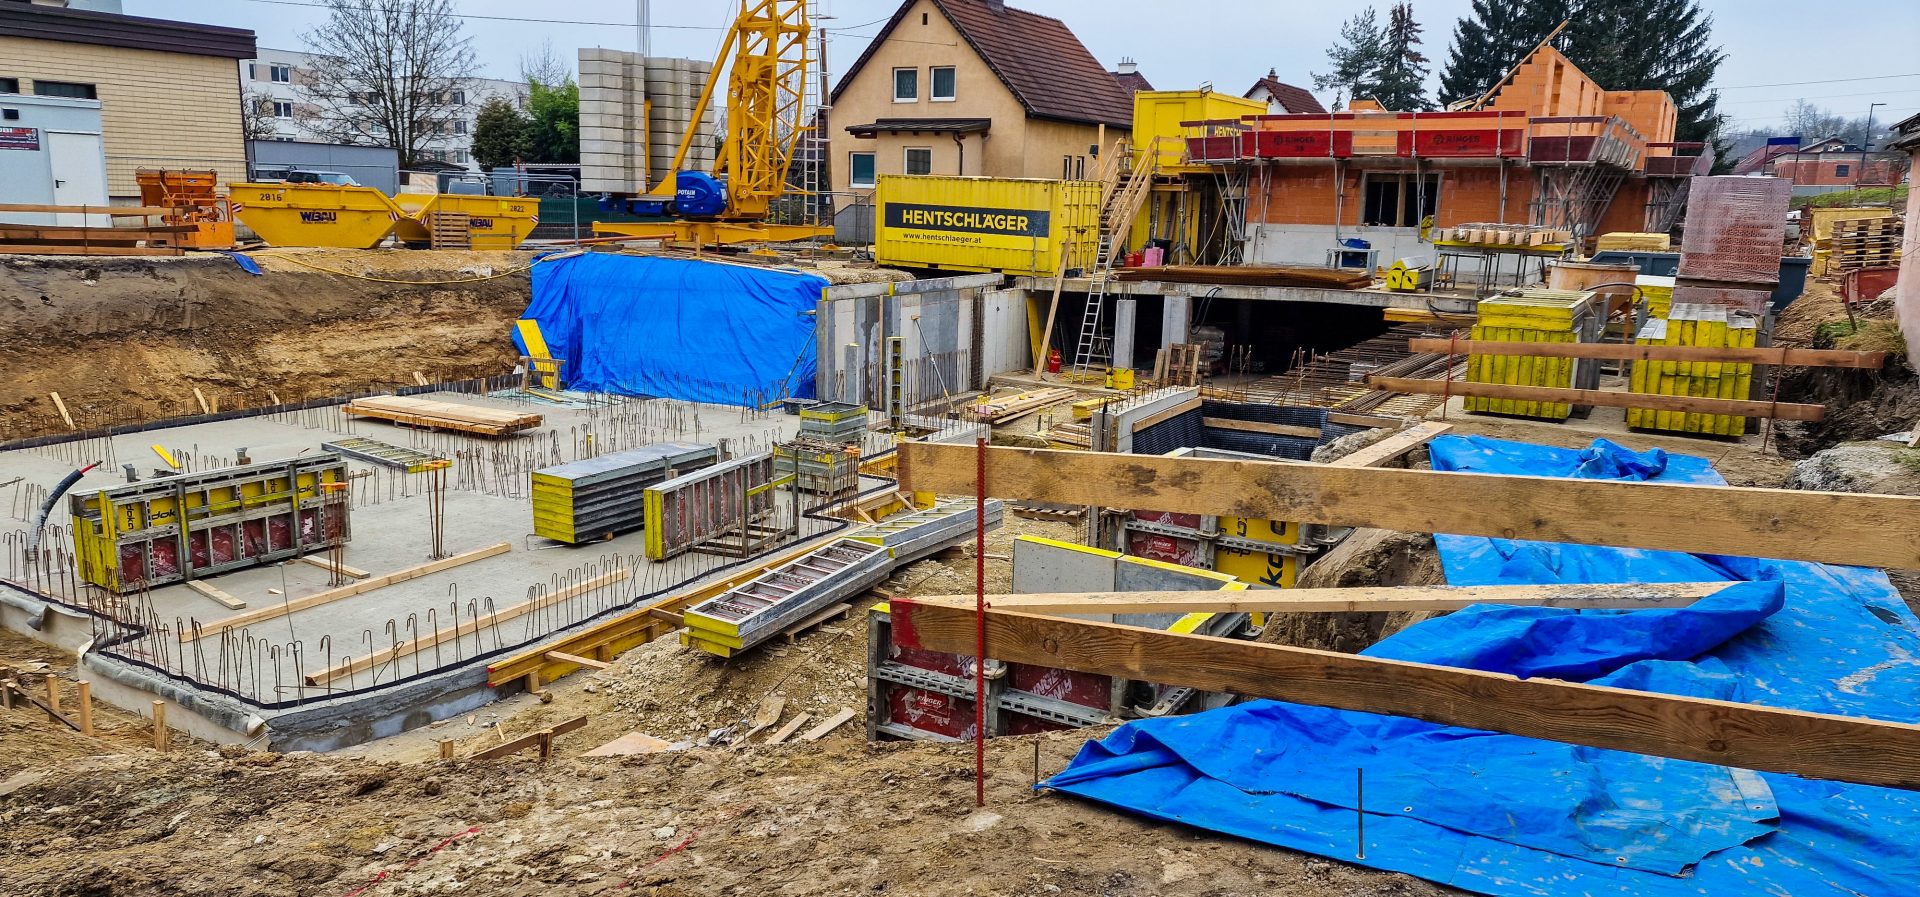 Baufortschritt in St. Georgen an der Gusen - vlw - Mietwohnungen - Hentschläger Bau GmbH